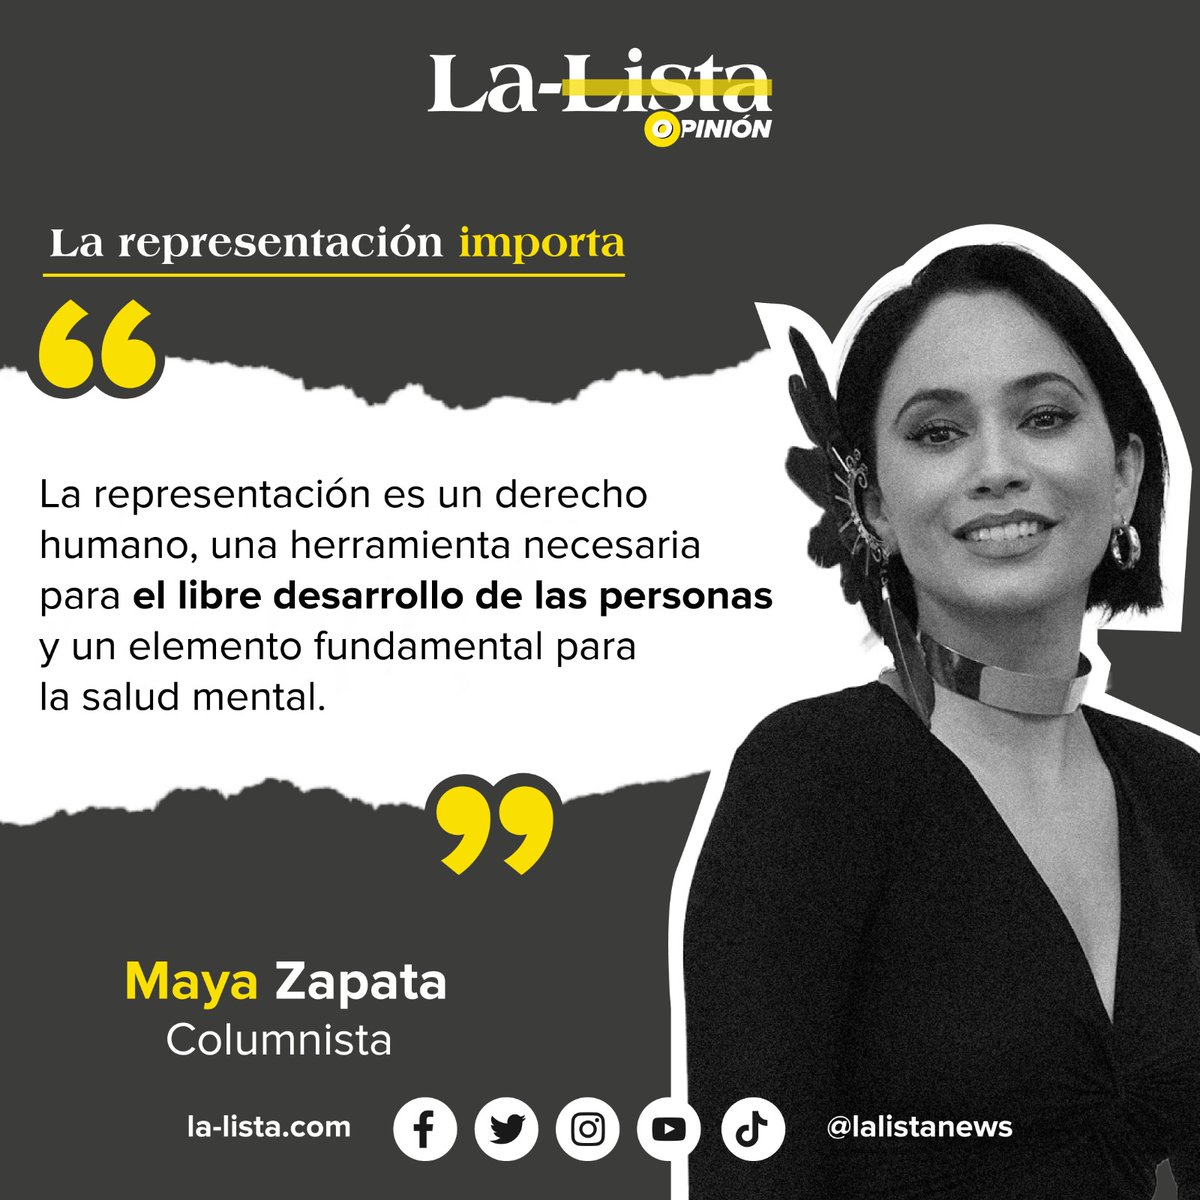 #Opinión | La representación importa. 🖋️ @LaMZapata escribe en #LaListaNews sobre la importancia de la diversidad en la representación política y mediática. 📌bit.ly/3lZUYrp